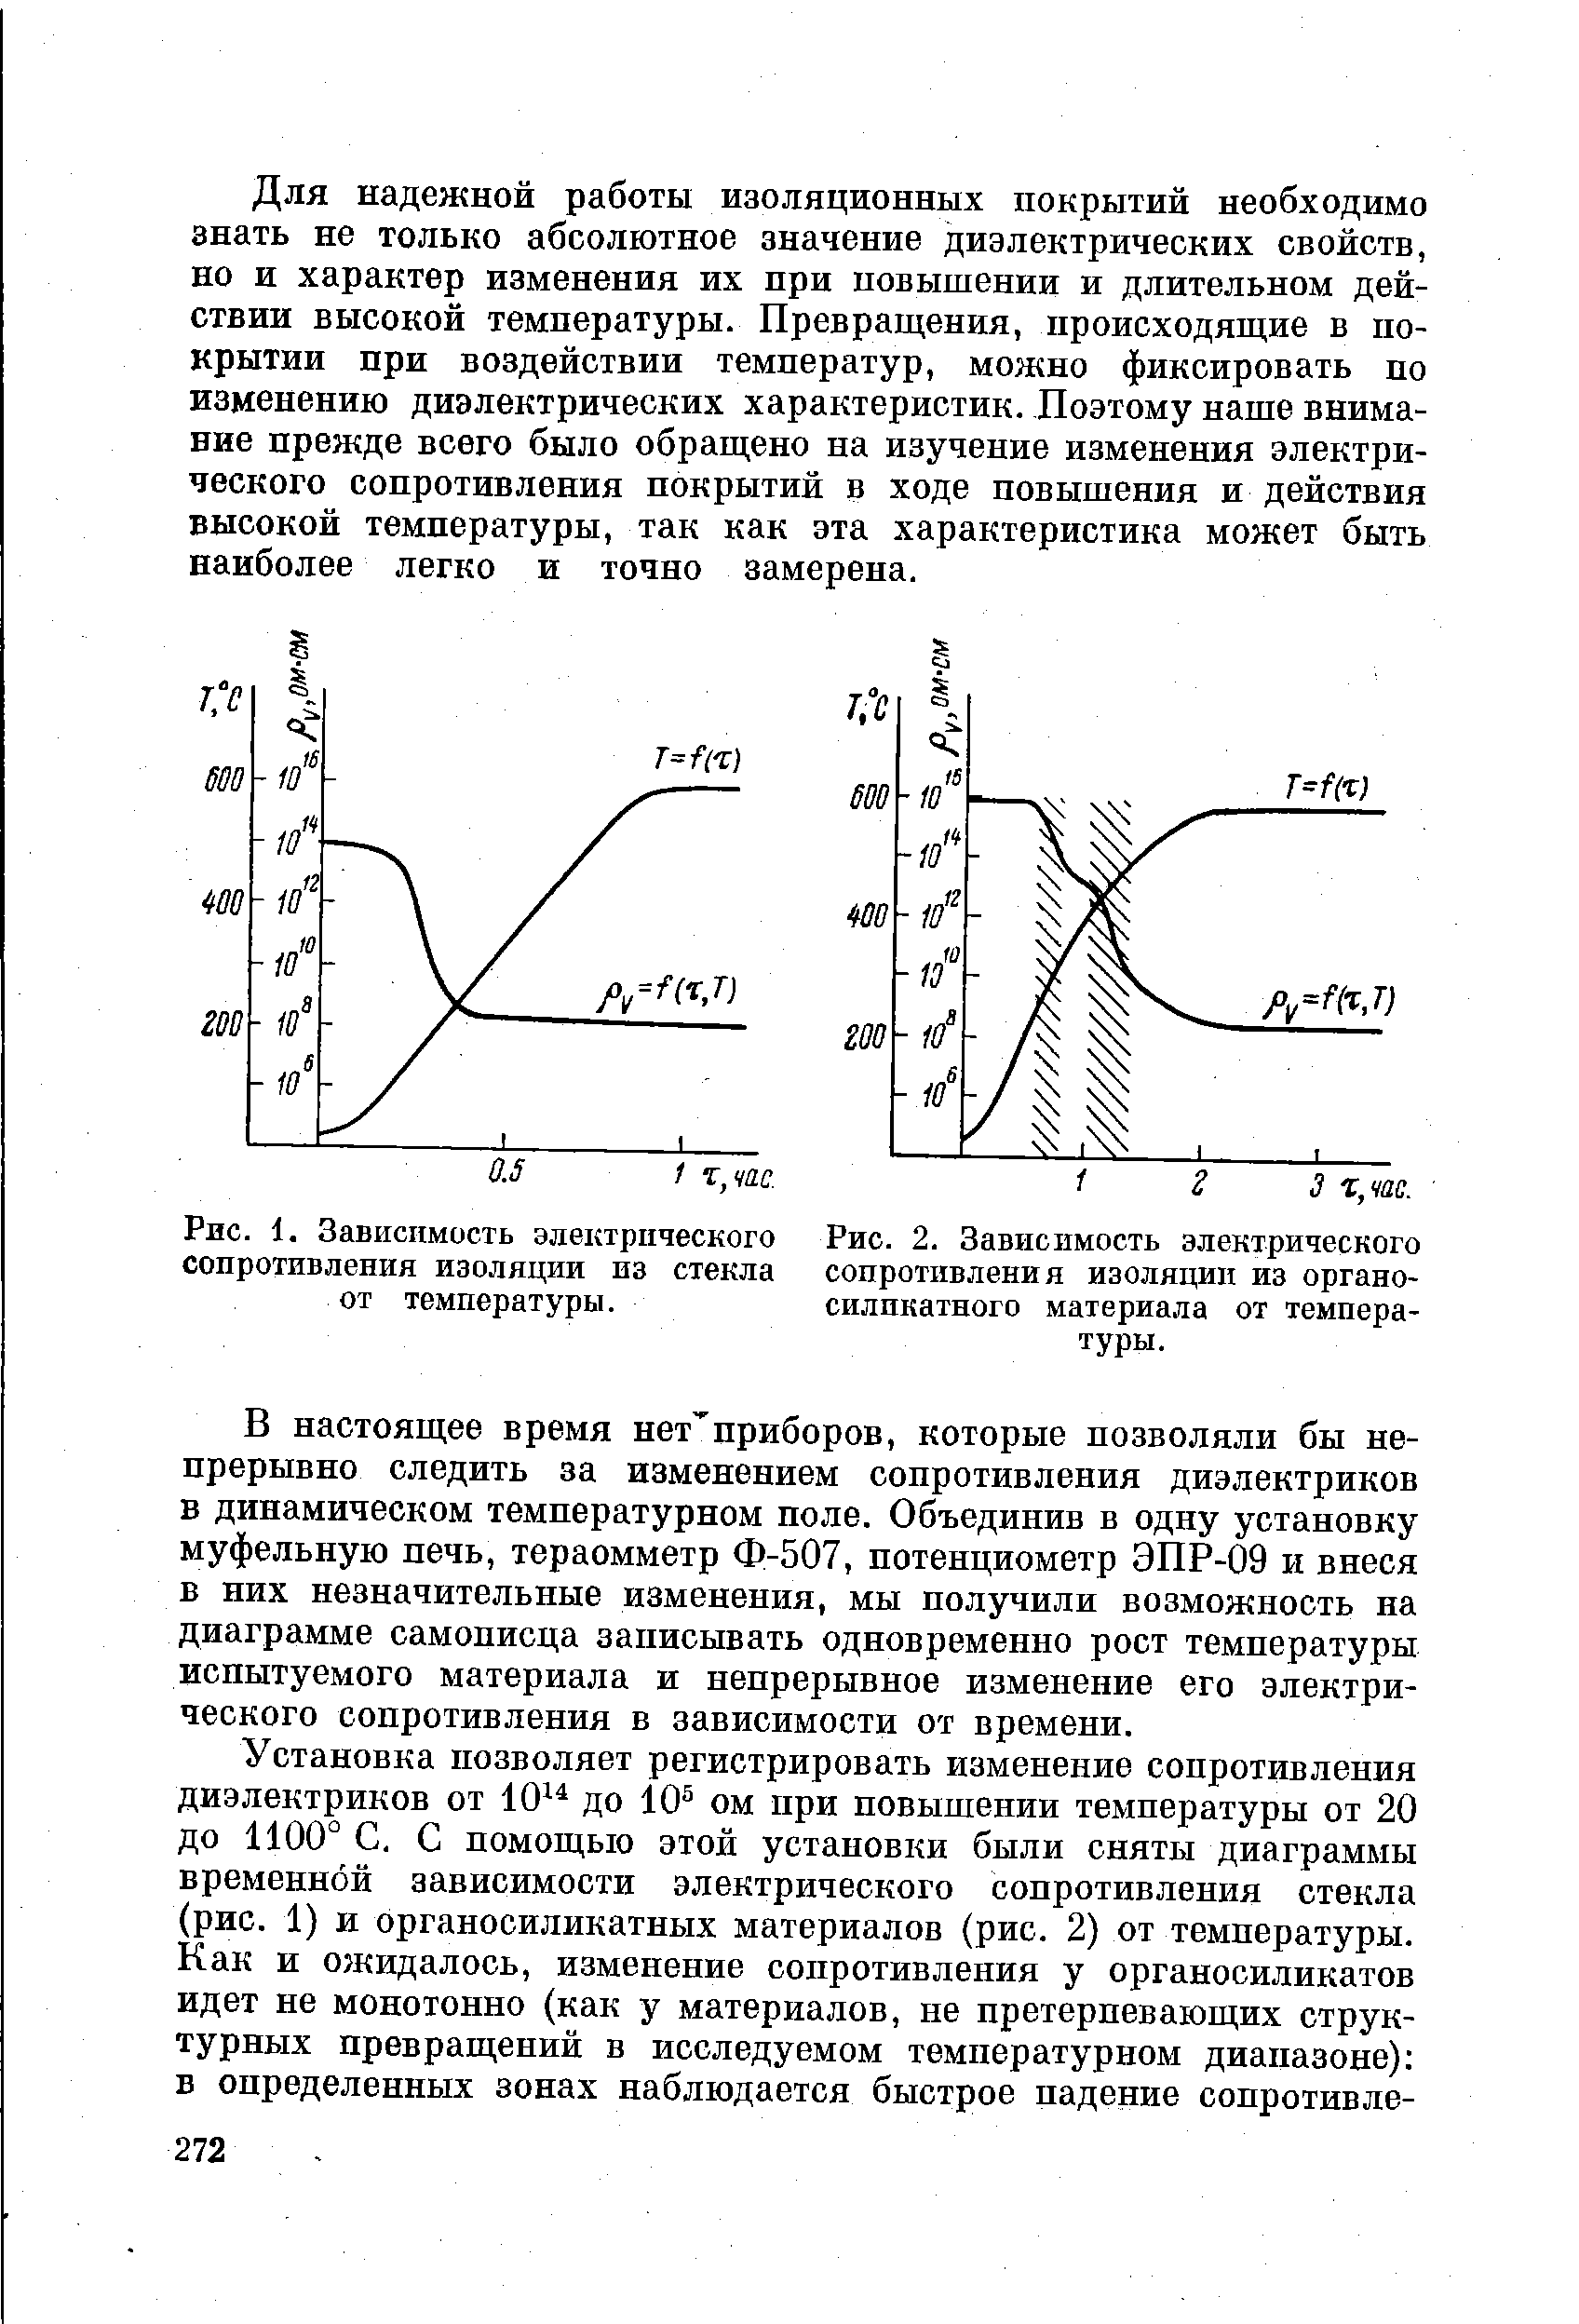 Рис. 2. Зависимость <a href="/info/19019">электрического сопротивления</a> изоляции из органо-силпкатного материала от температуры.
